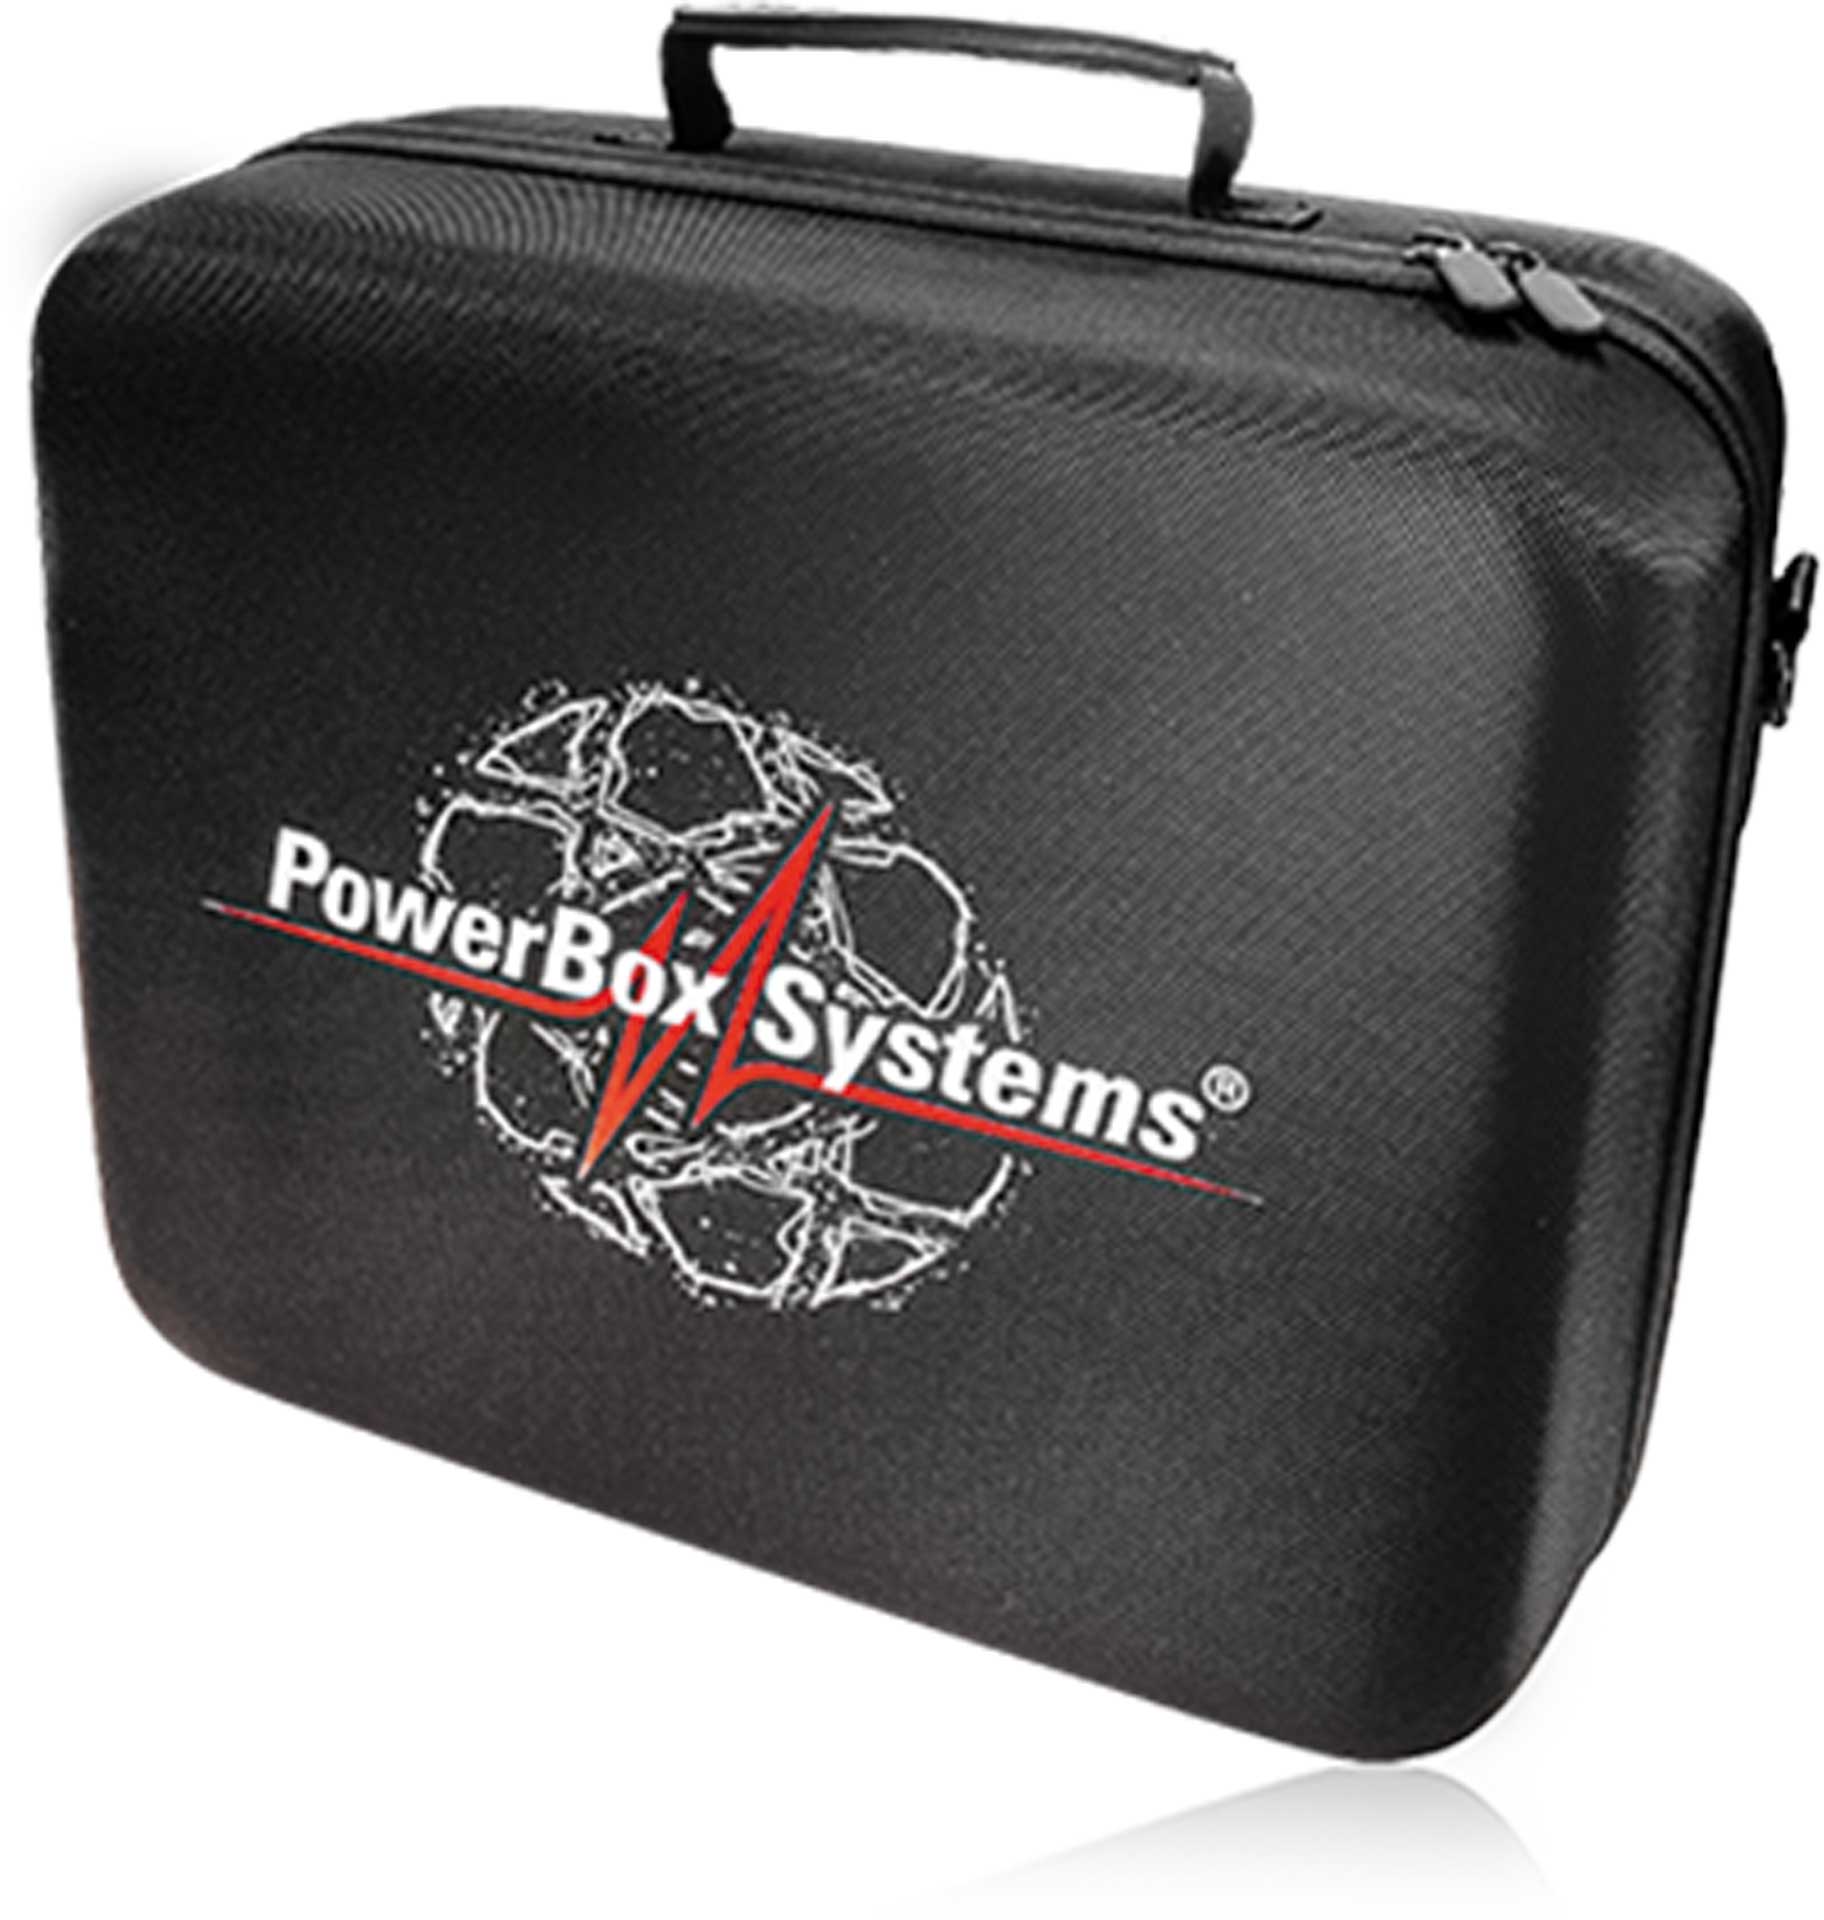 POWERBOX SYSTEMS Softbag "ATOM" transport bag